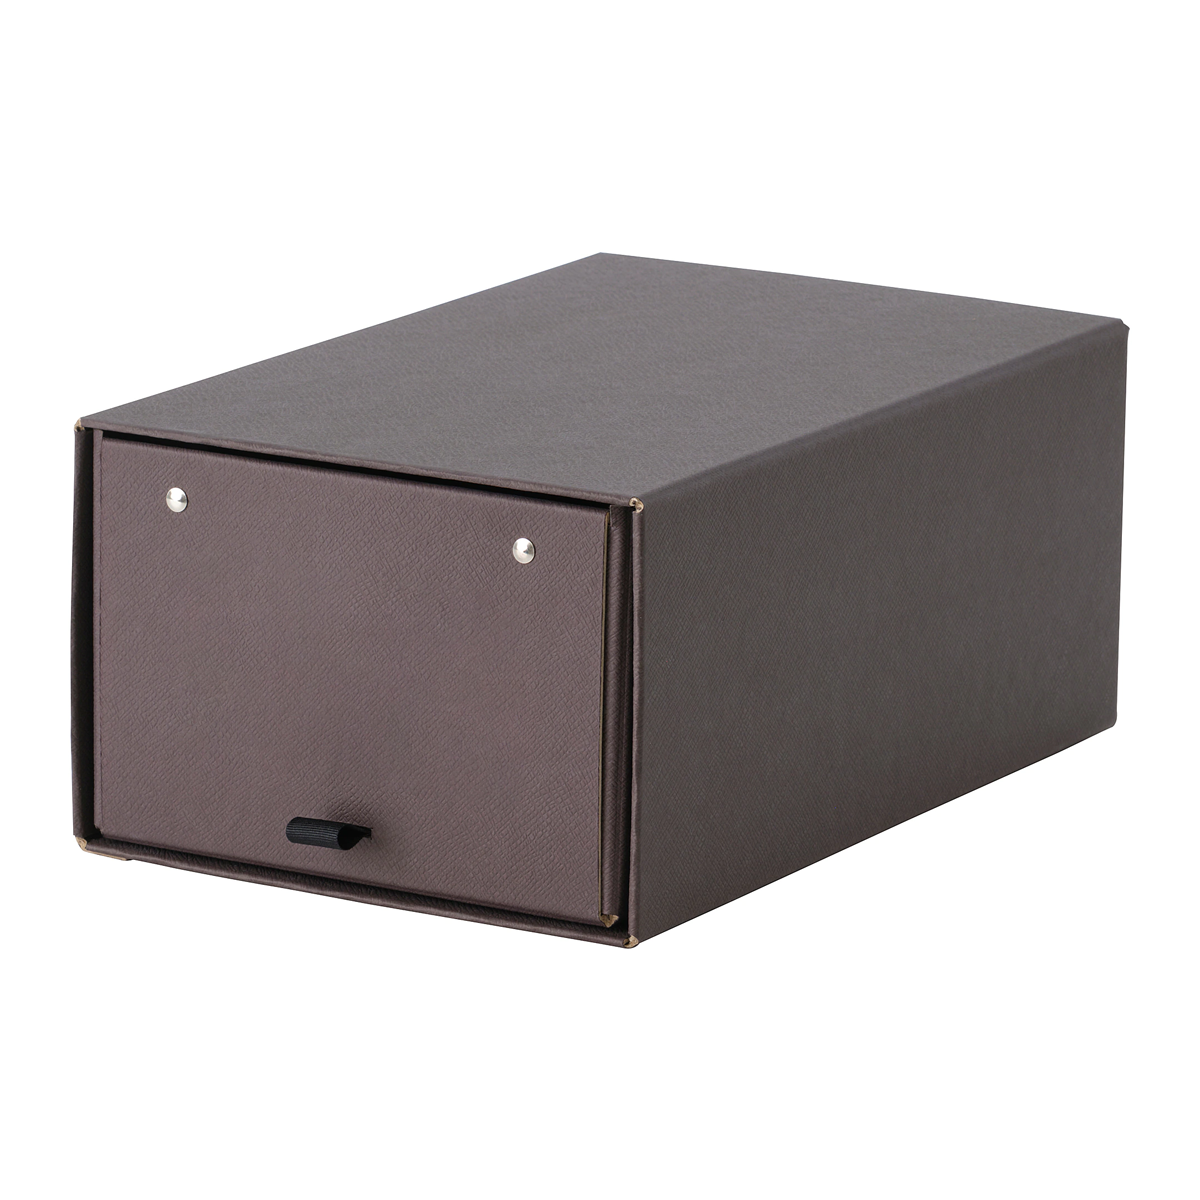 ANILINARE Shoe box, dark brown34x22x15 cm